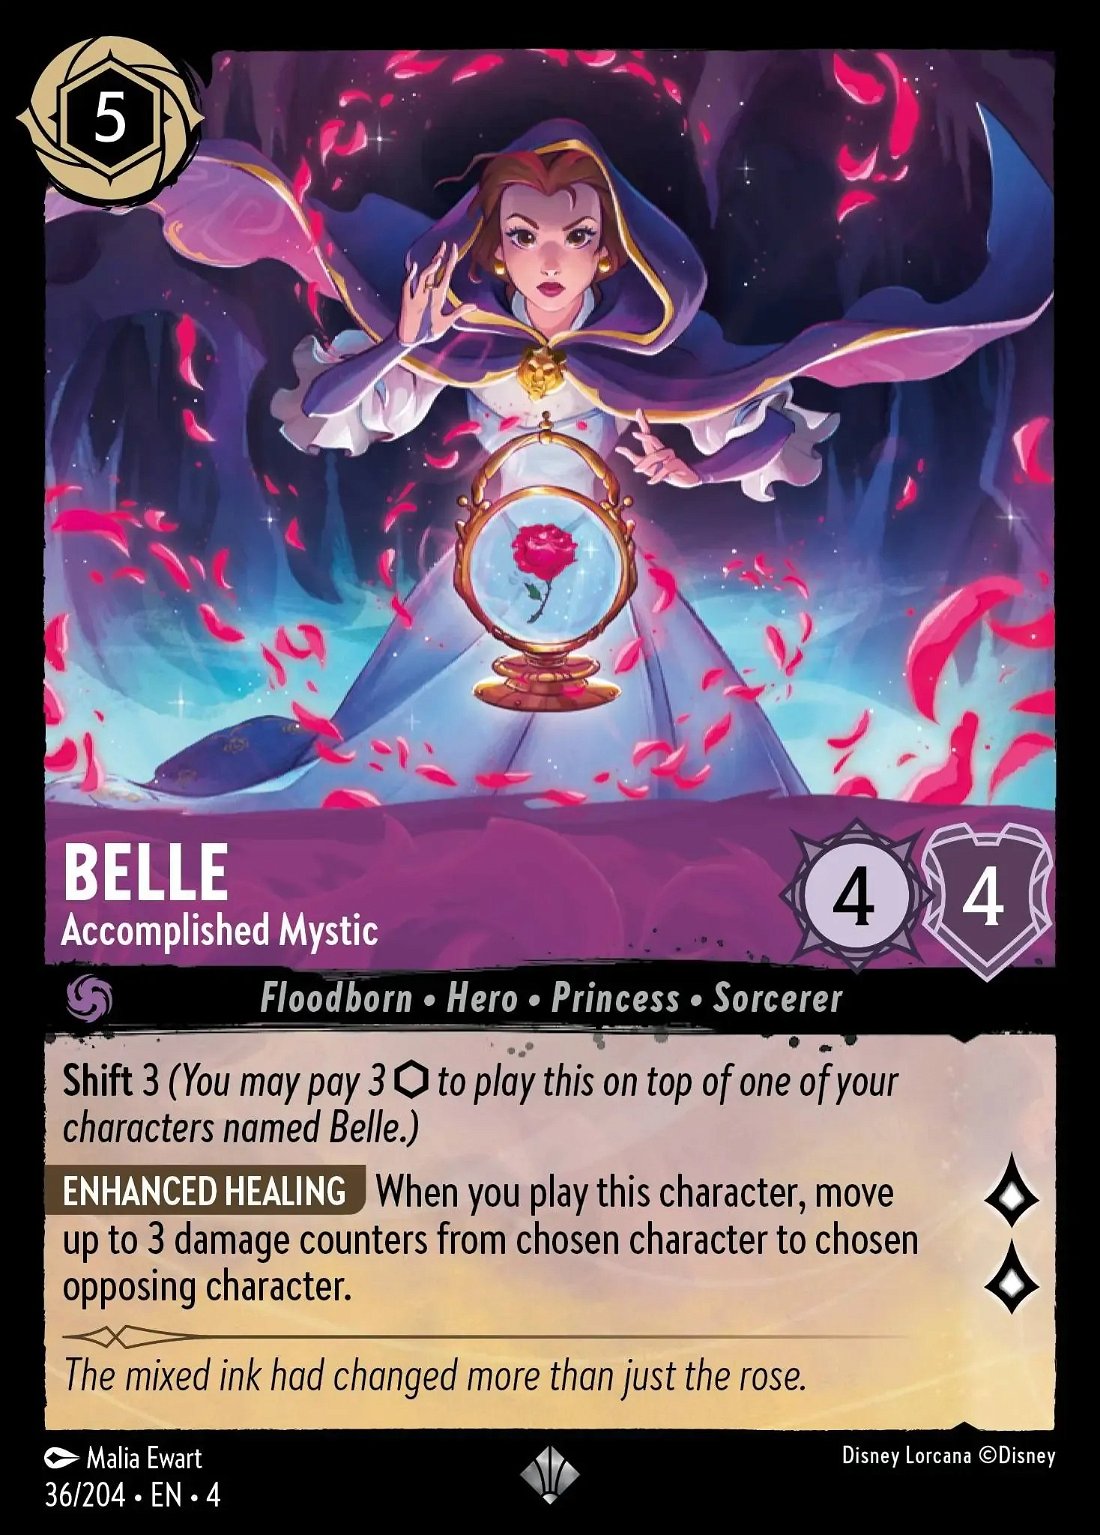 Belle - Accomplished Mystic Crop image Wallpaper